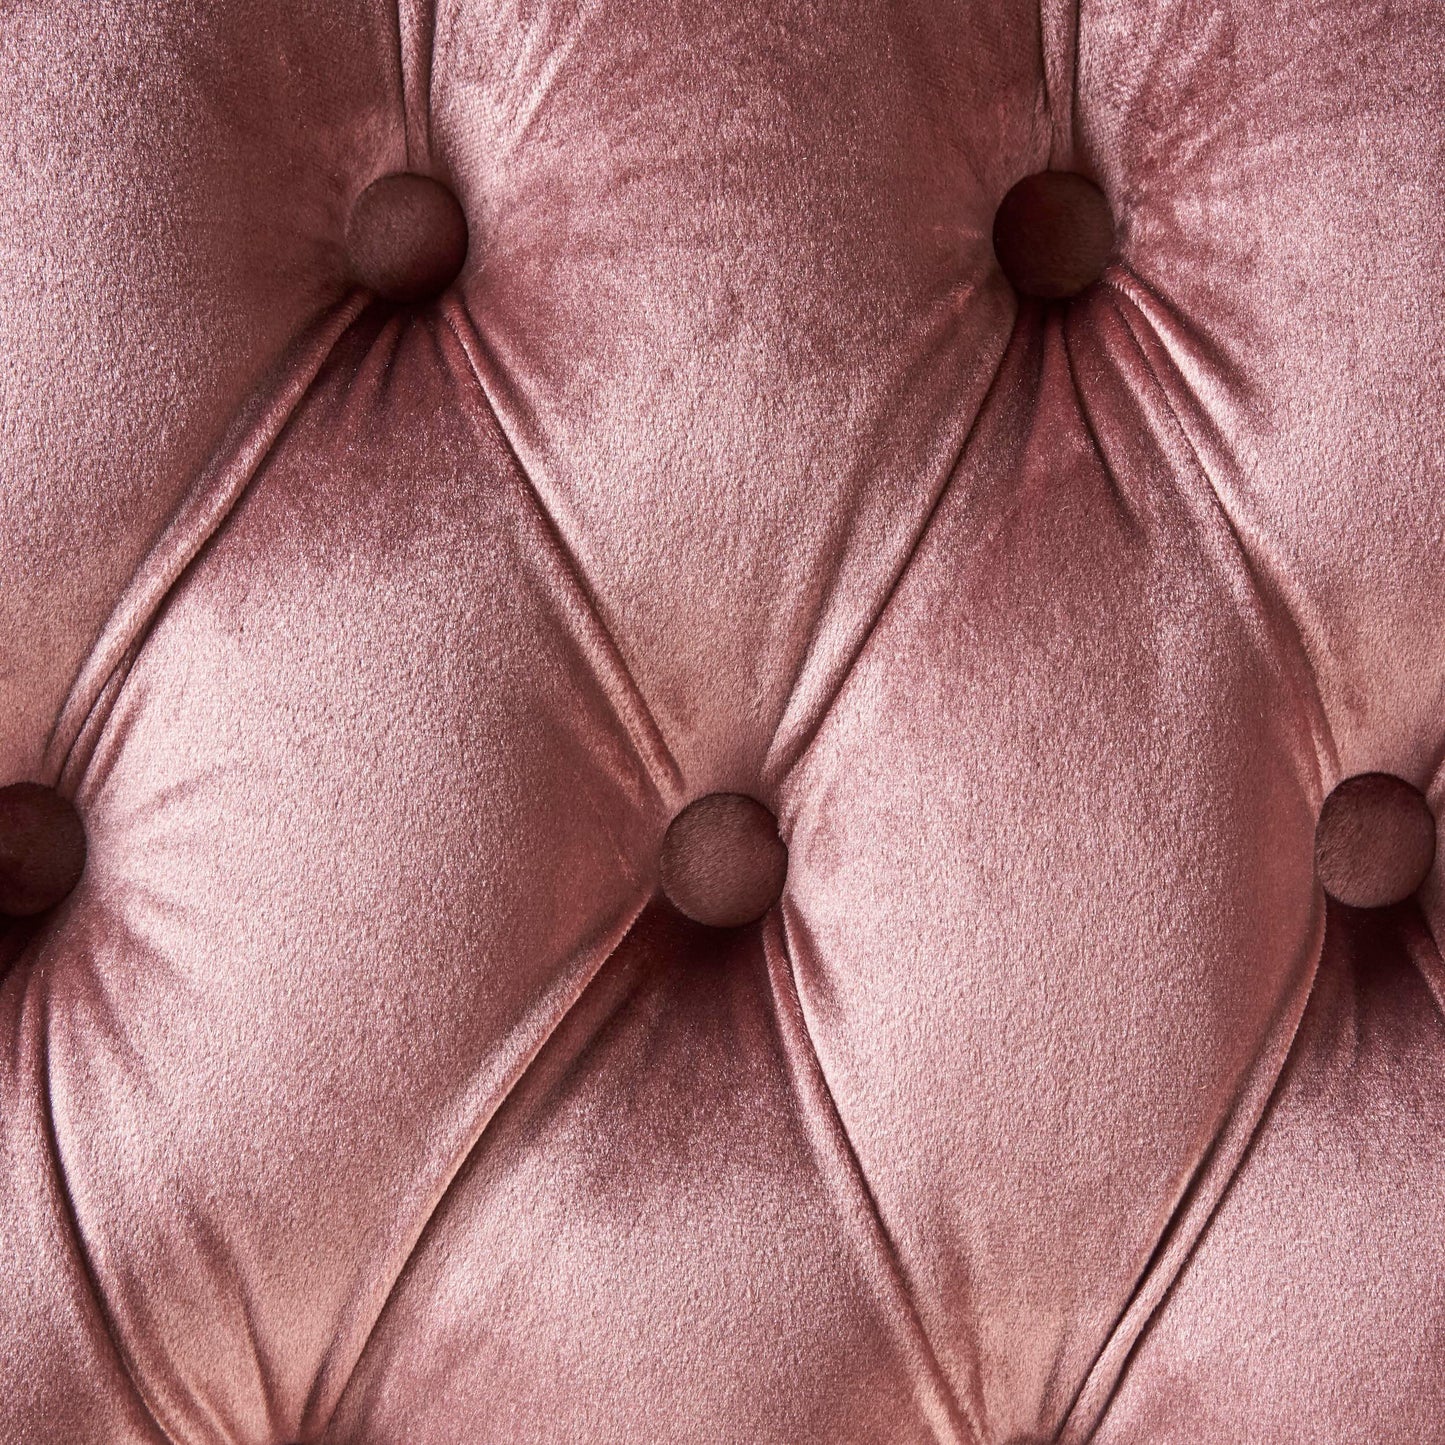 Talia Elegant Tufted New Velvet Cushion Bench